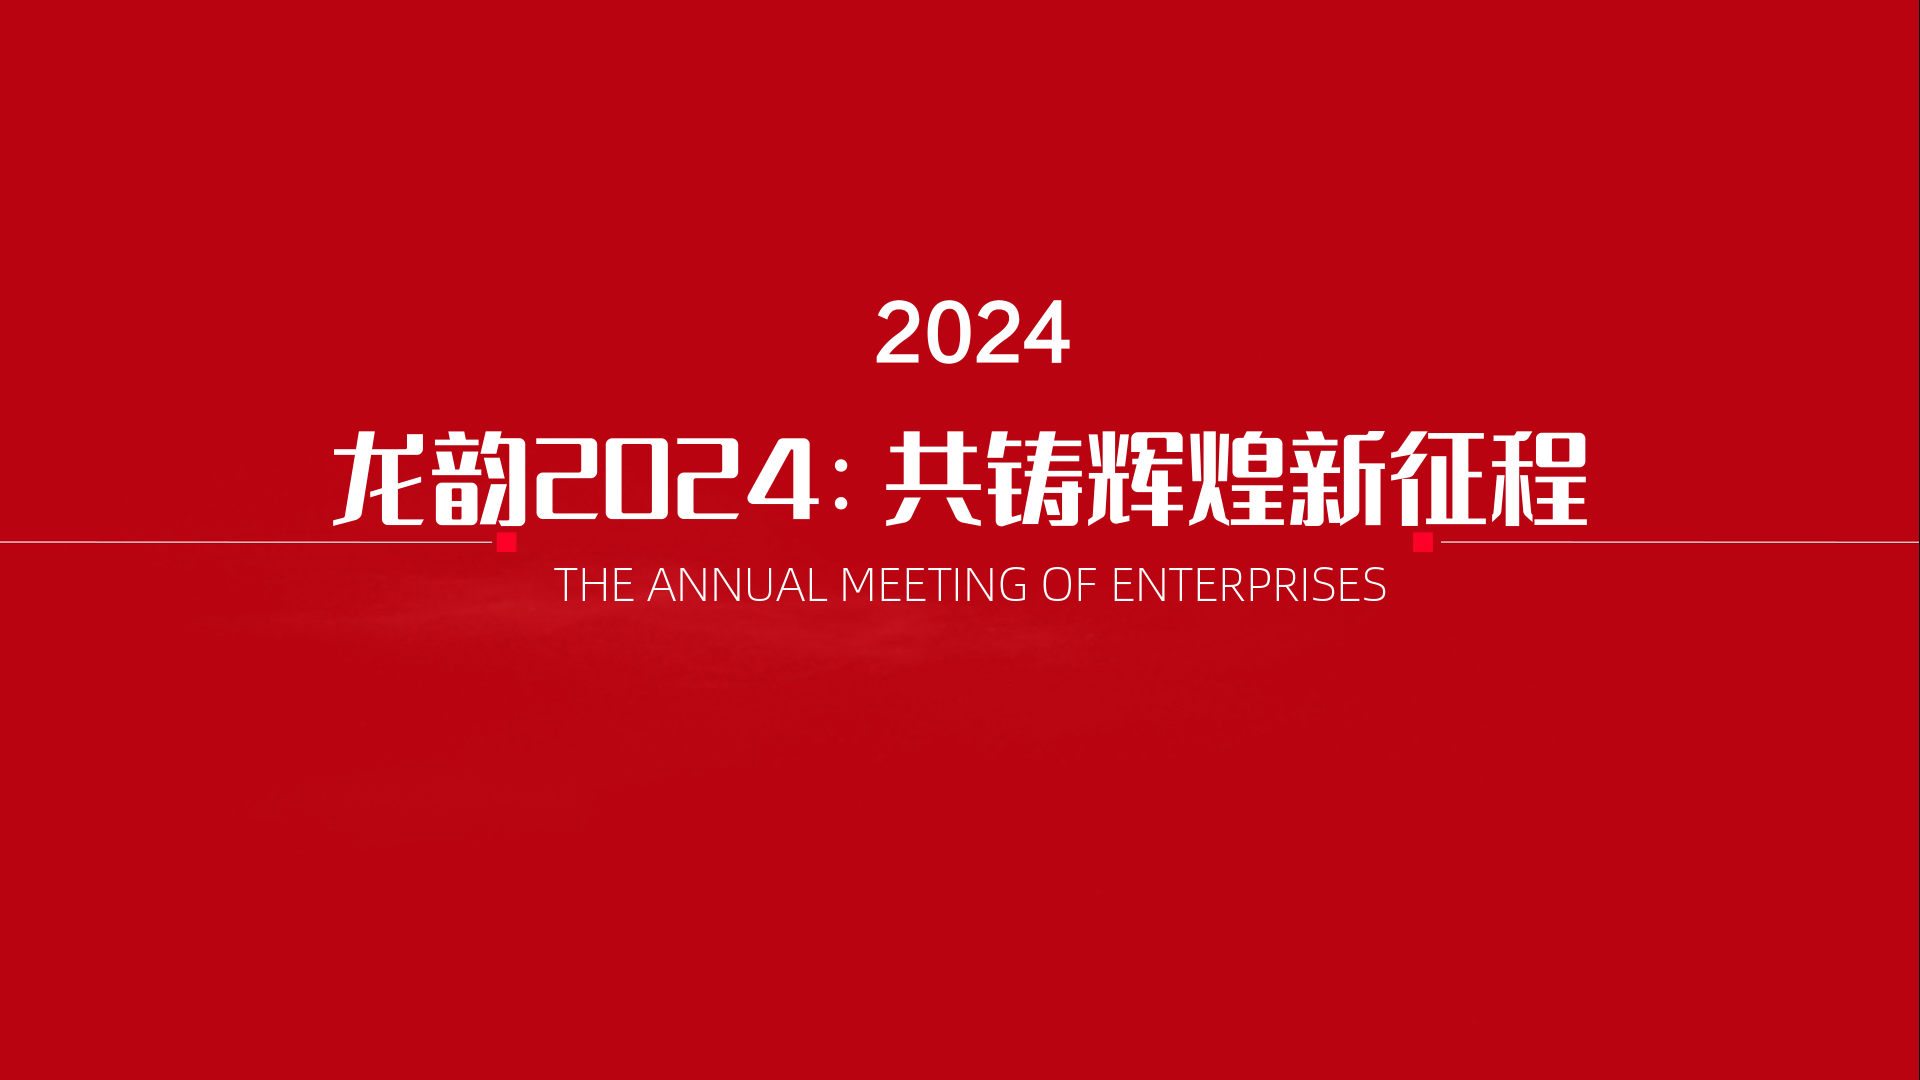 2024年会主题名称-龙韵2024：共铸辉煌新征程